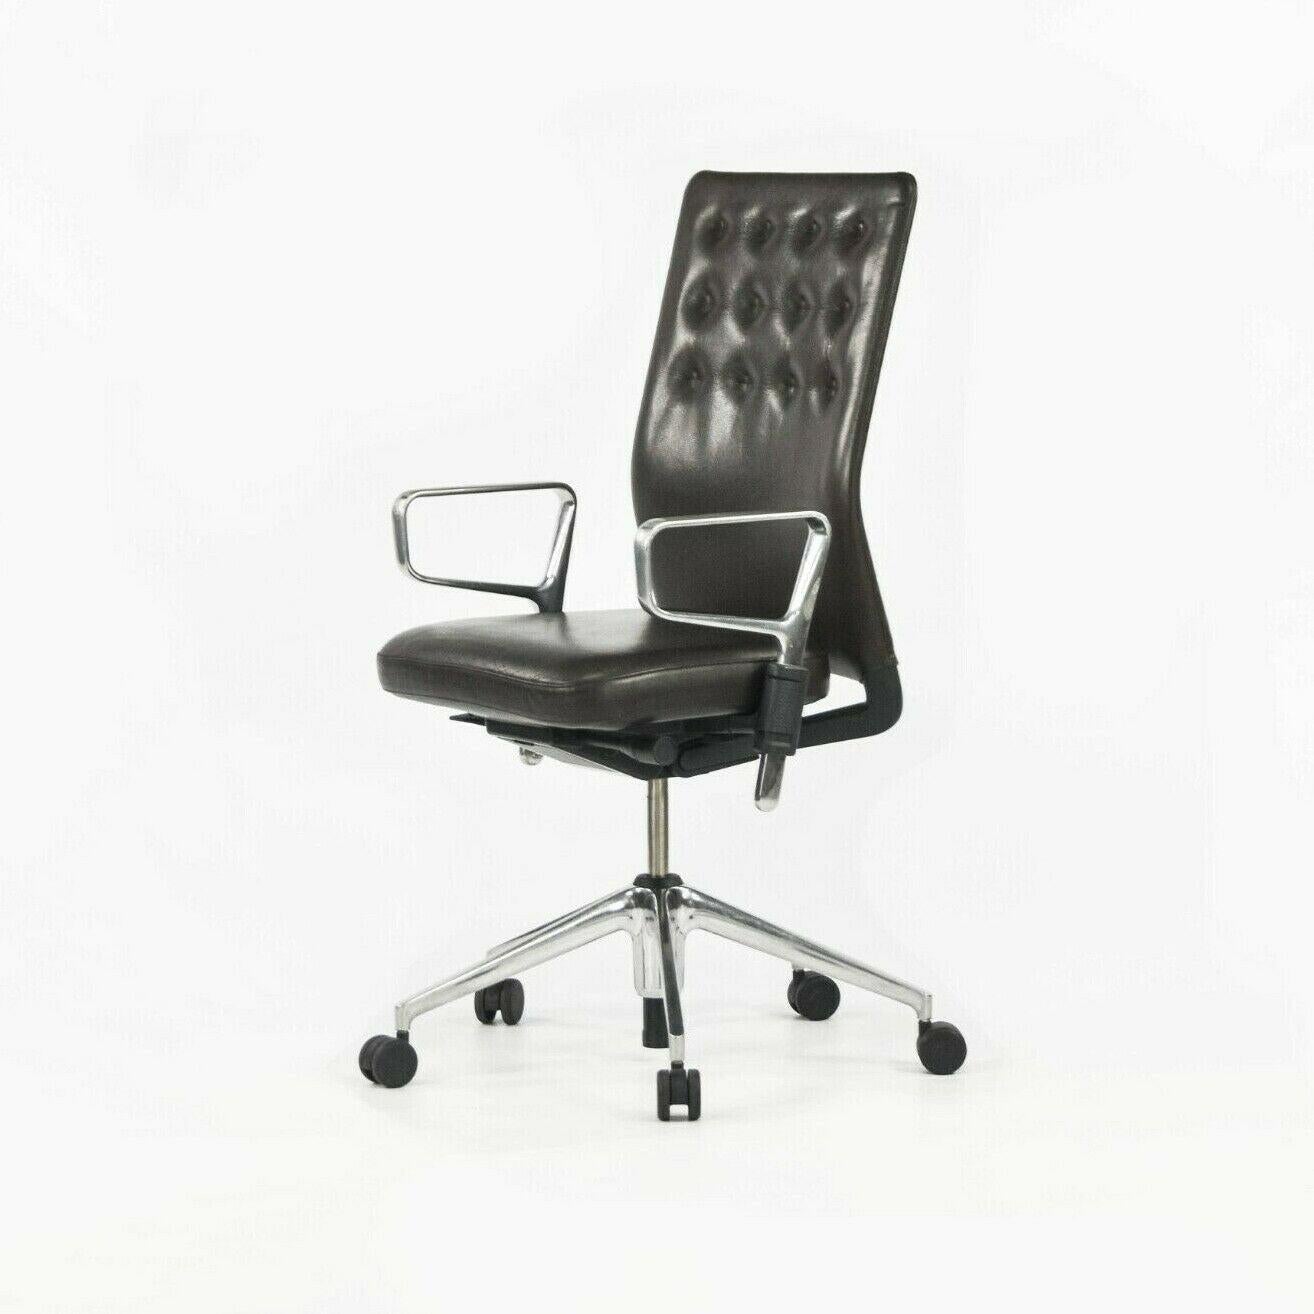 Est mise en vente une seule (plusieurs chaises sont disponibles mais le prix indiqué est celui d'une seule chaise) chaise ID Trim en cuir marron très foncé, conçue par Antonio Citterio, produite par Vitra en 2012. Il s'agit d'un magnifique exemple